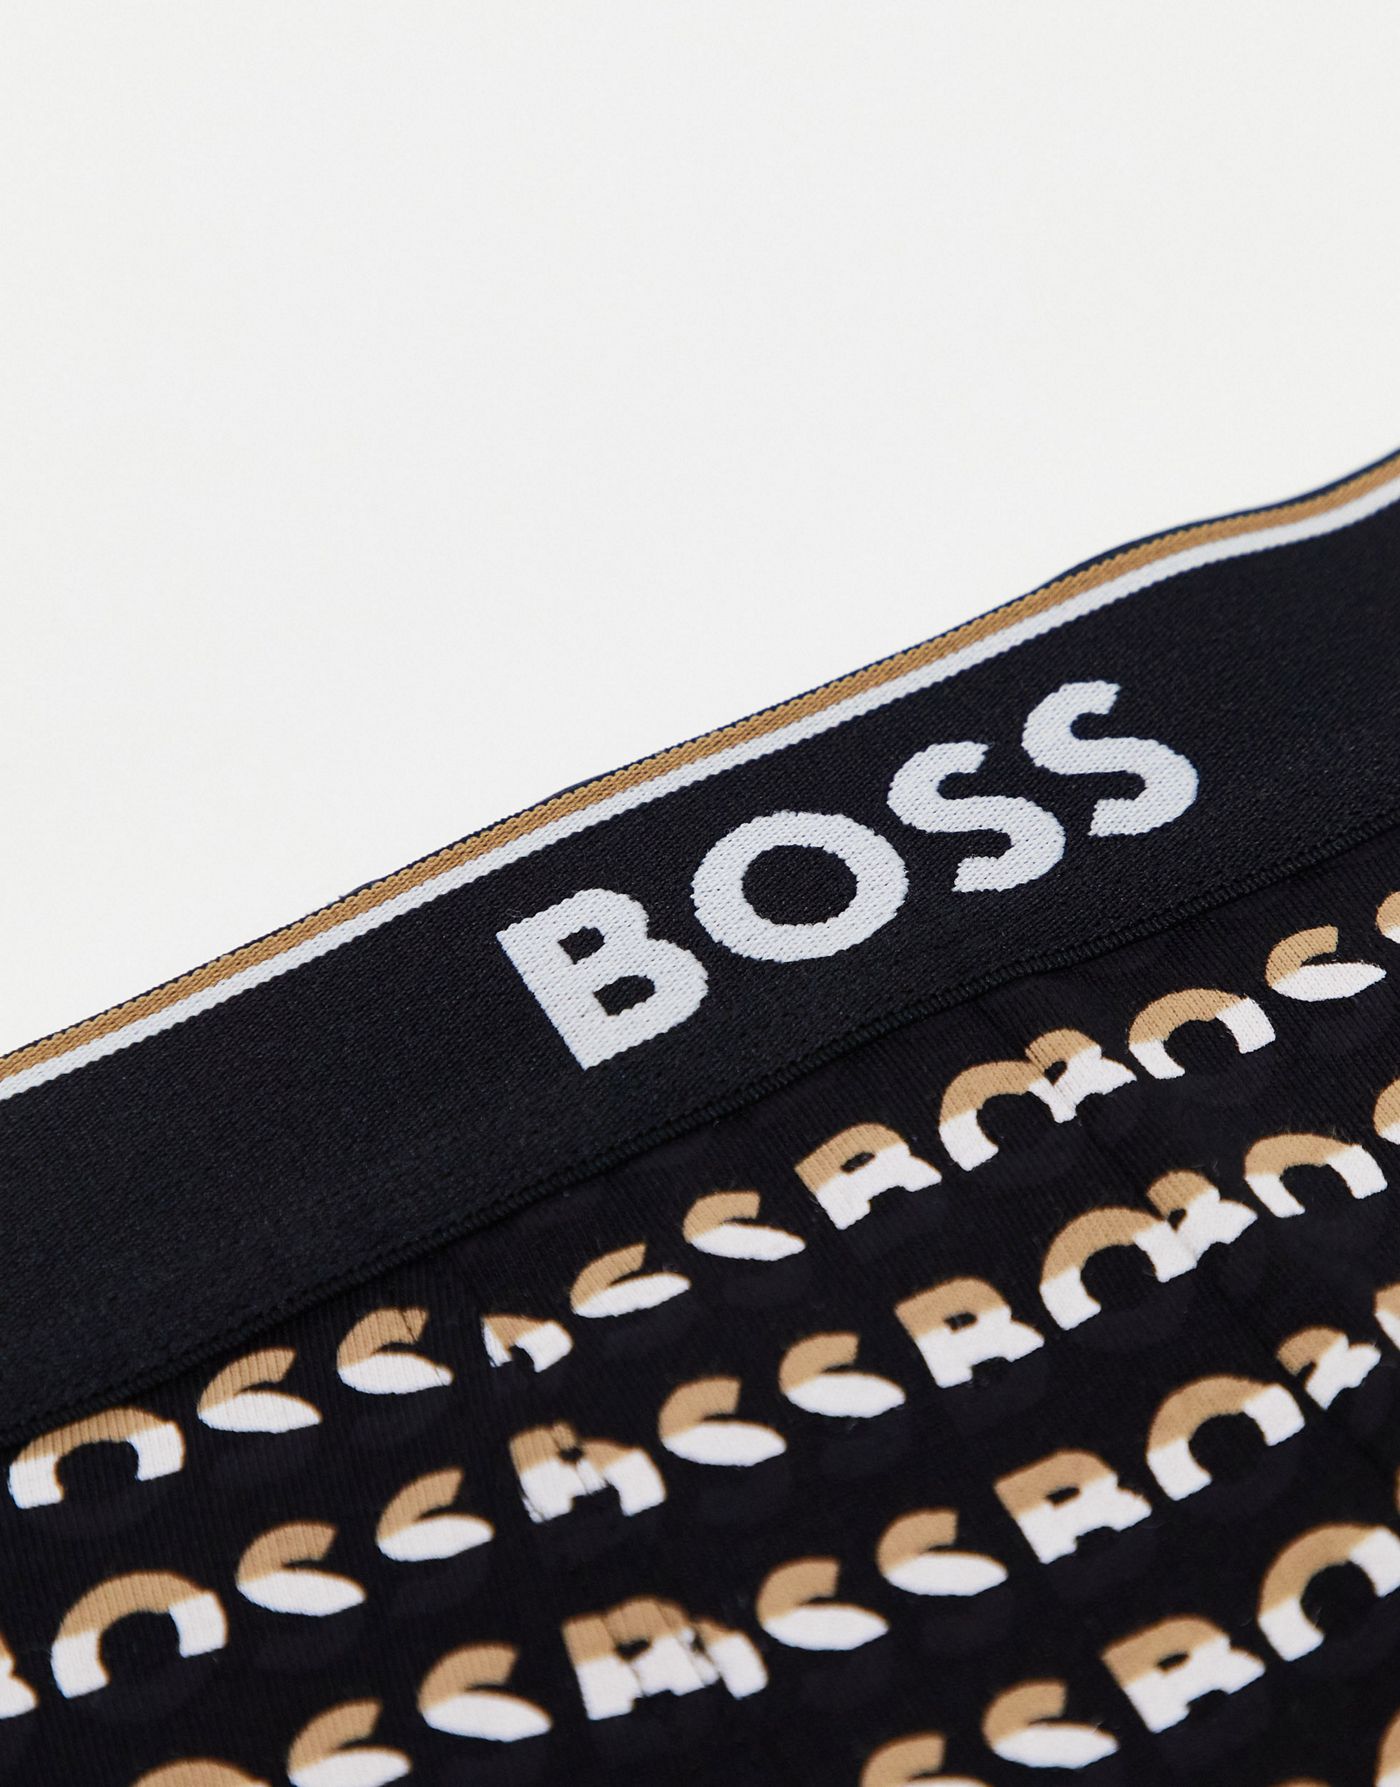 Boss Bodywear power 3 pack trunks in black, navy and logo design